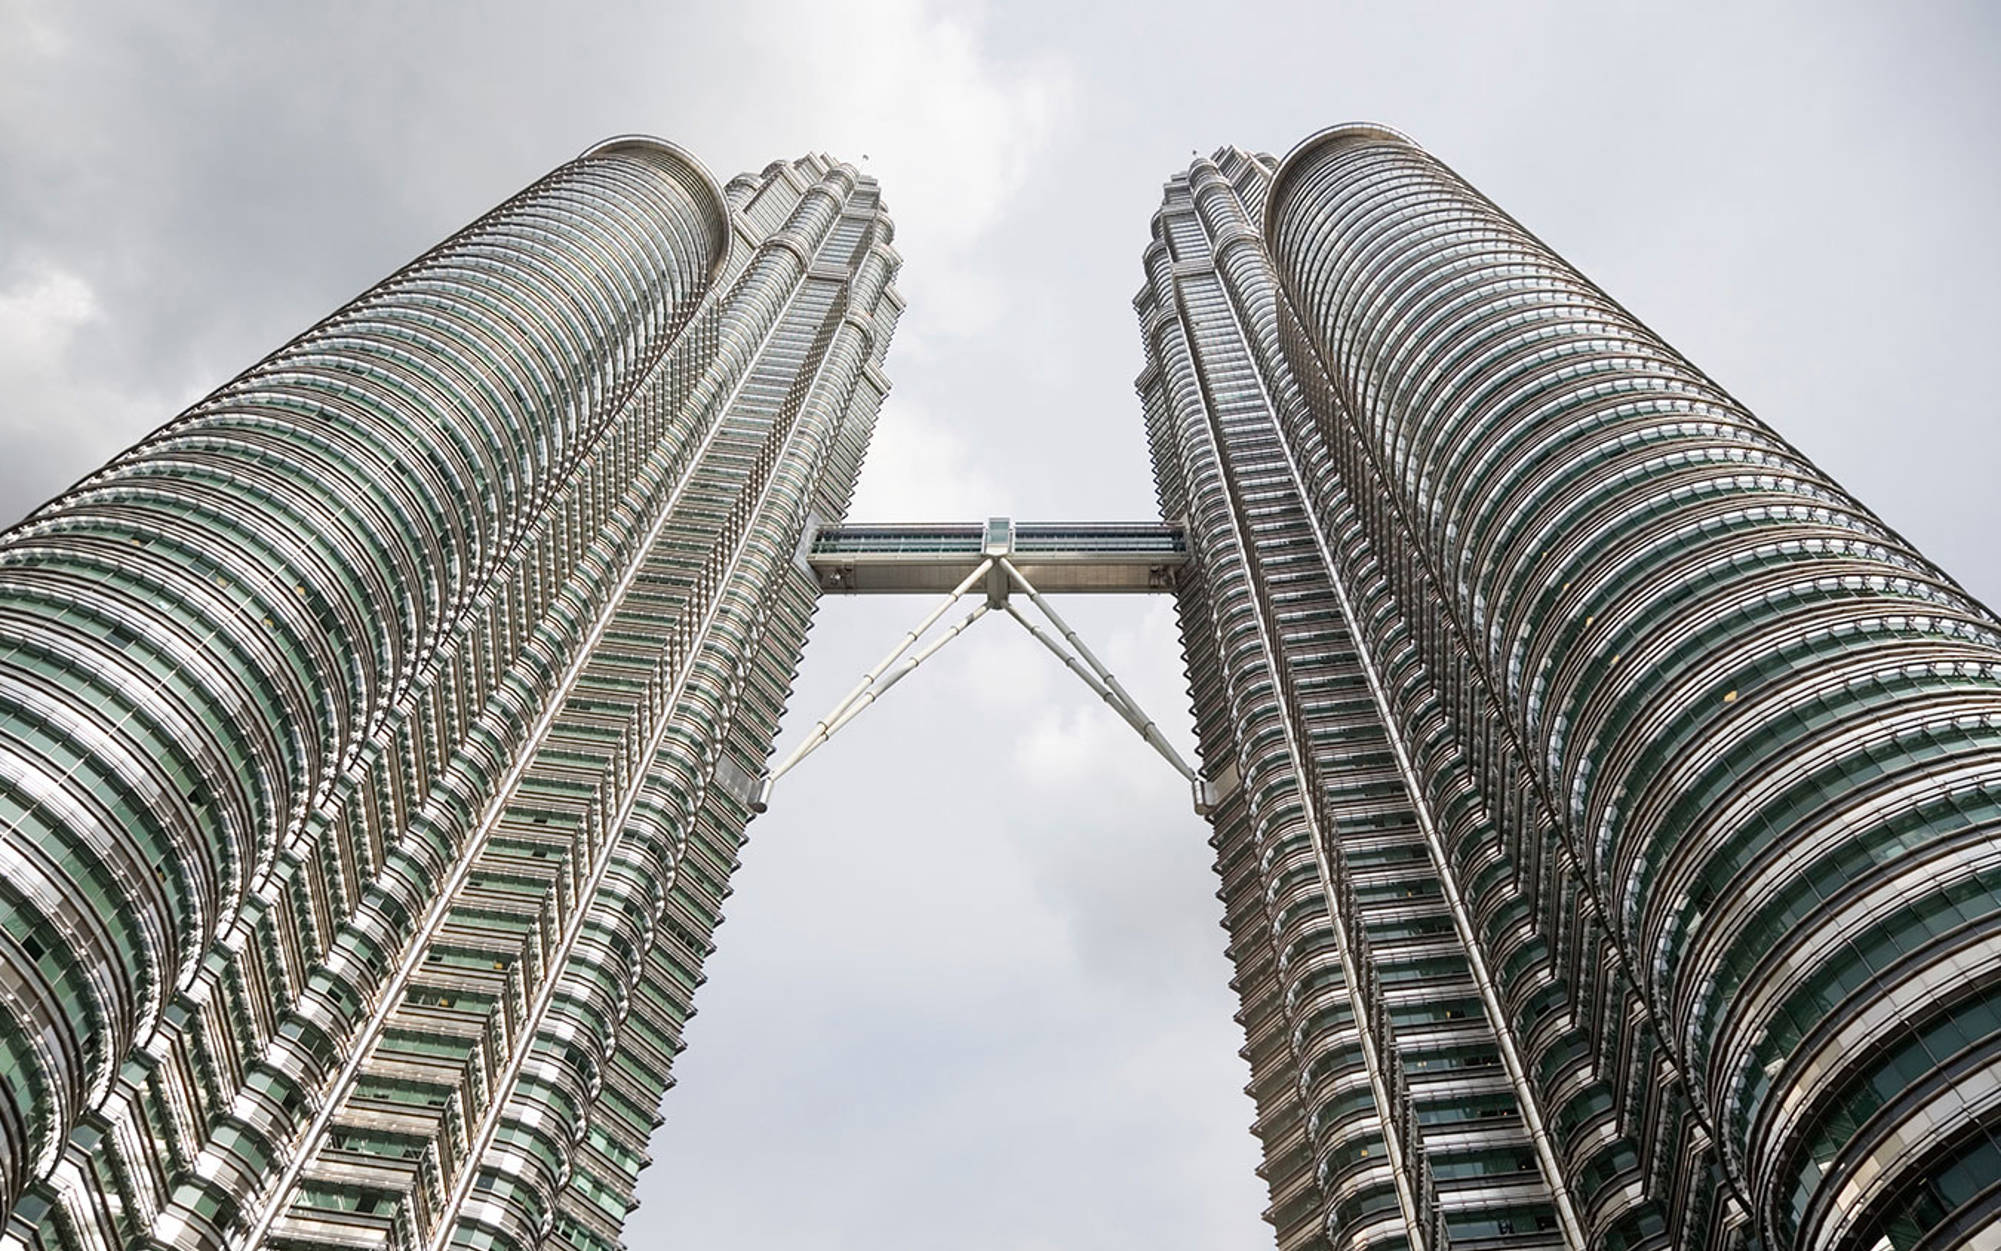 Petronas Tower in Kuala Lumpur – Jotun reference